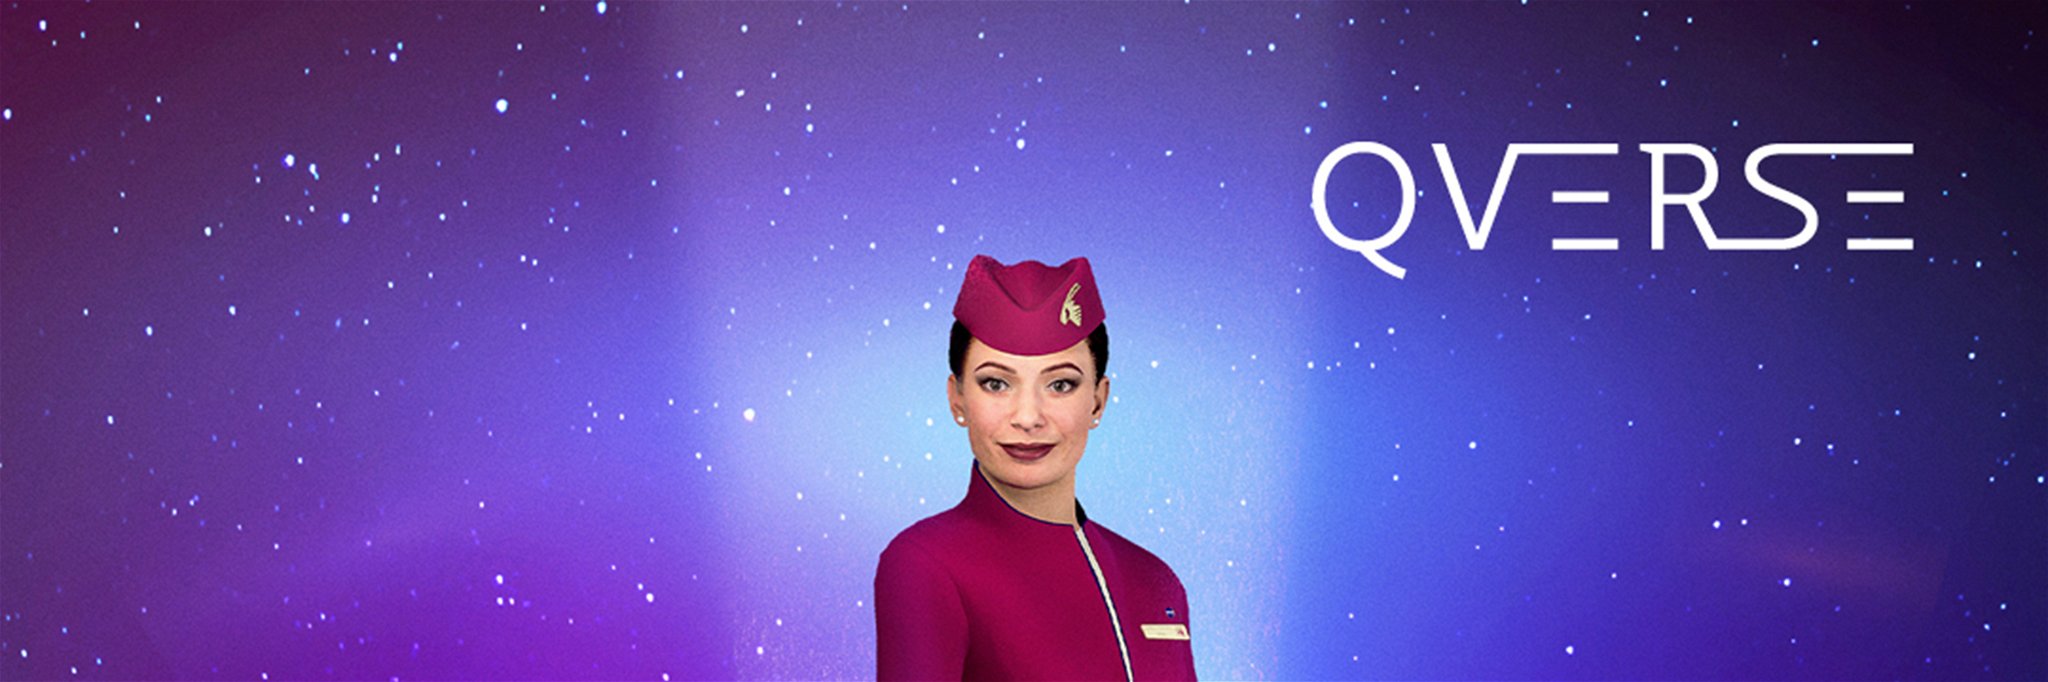 Virtuelle Flugbegleiter in Diensten von Qatar Airways.